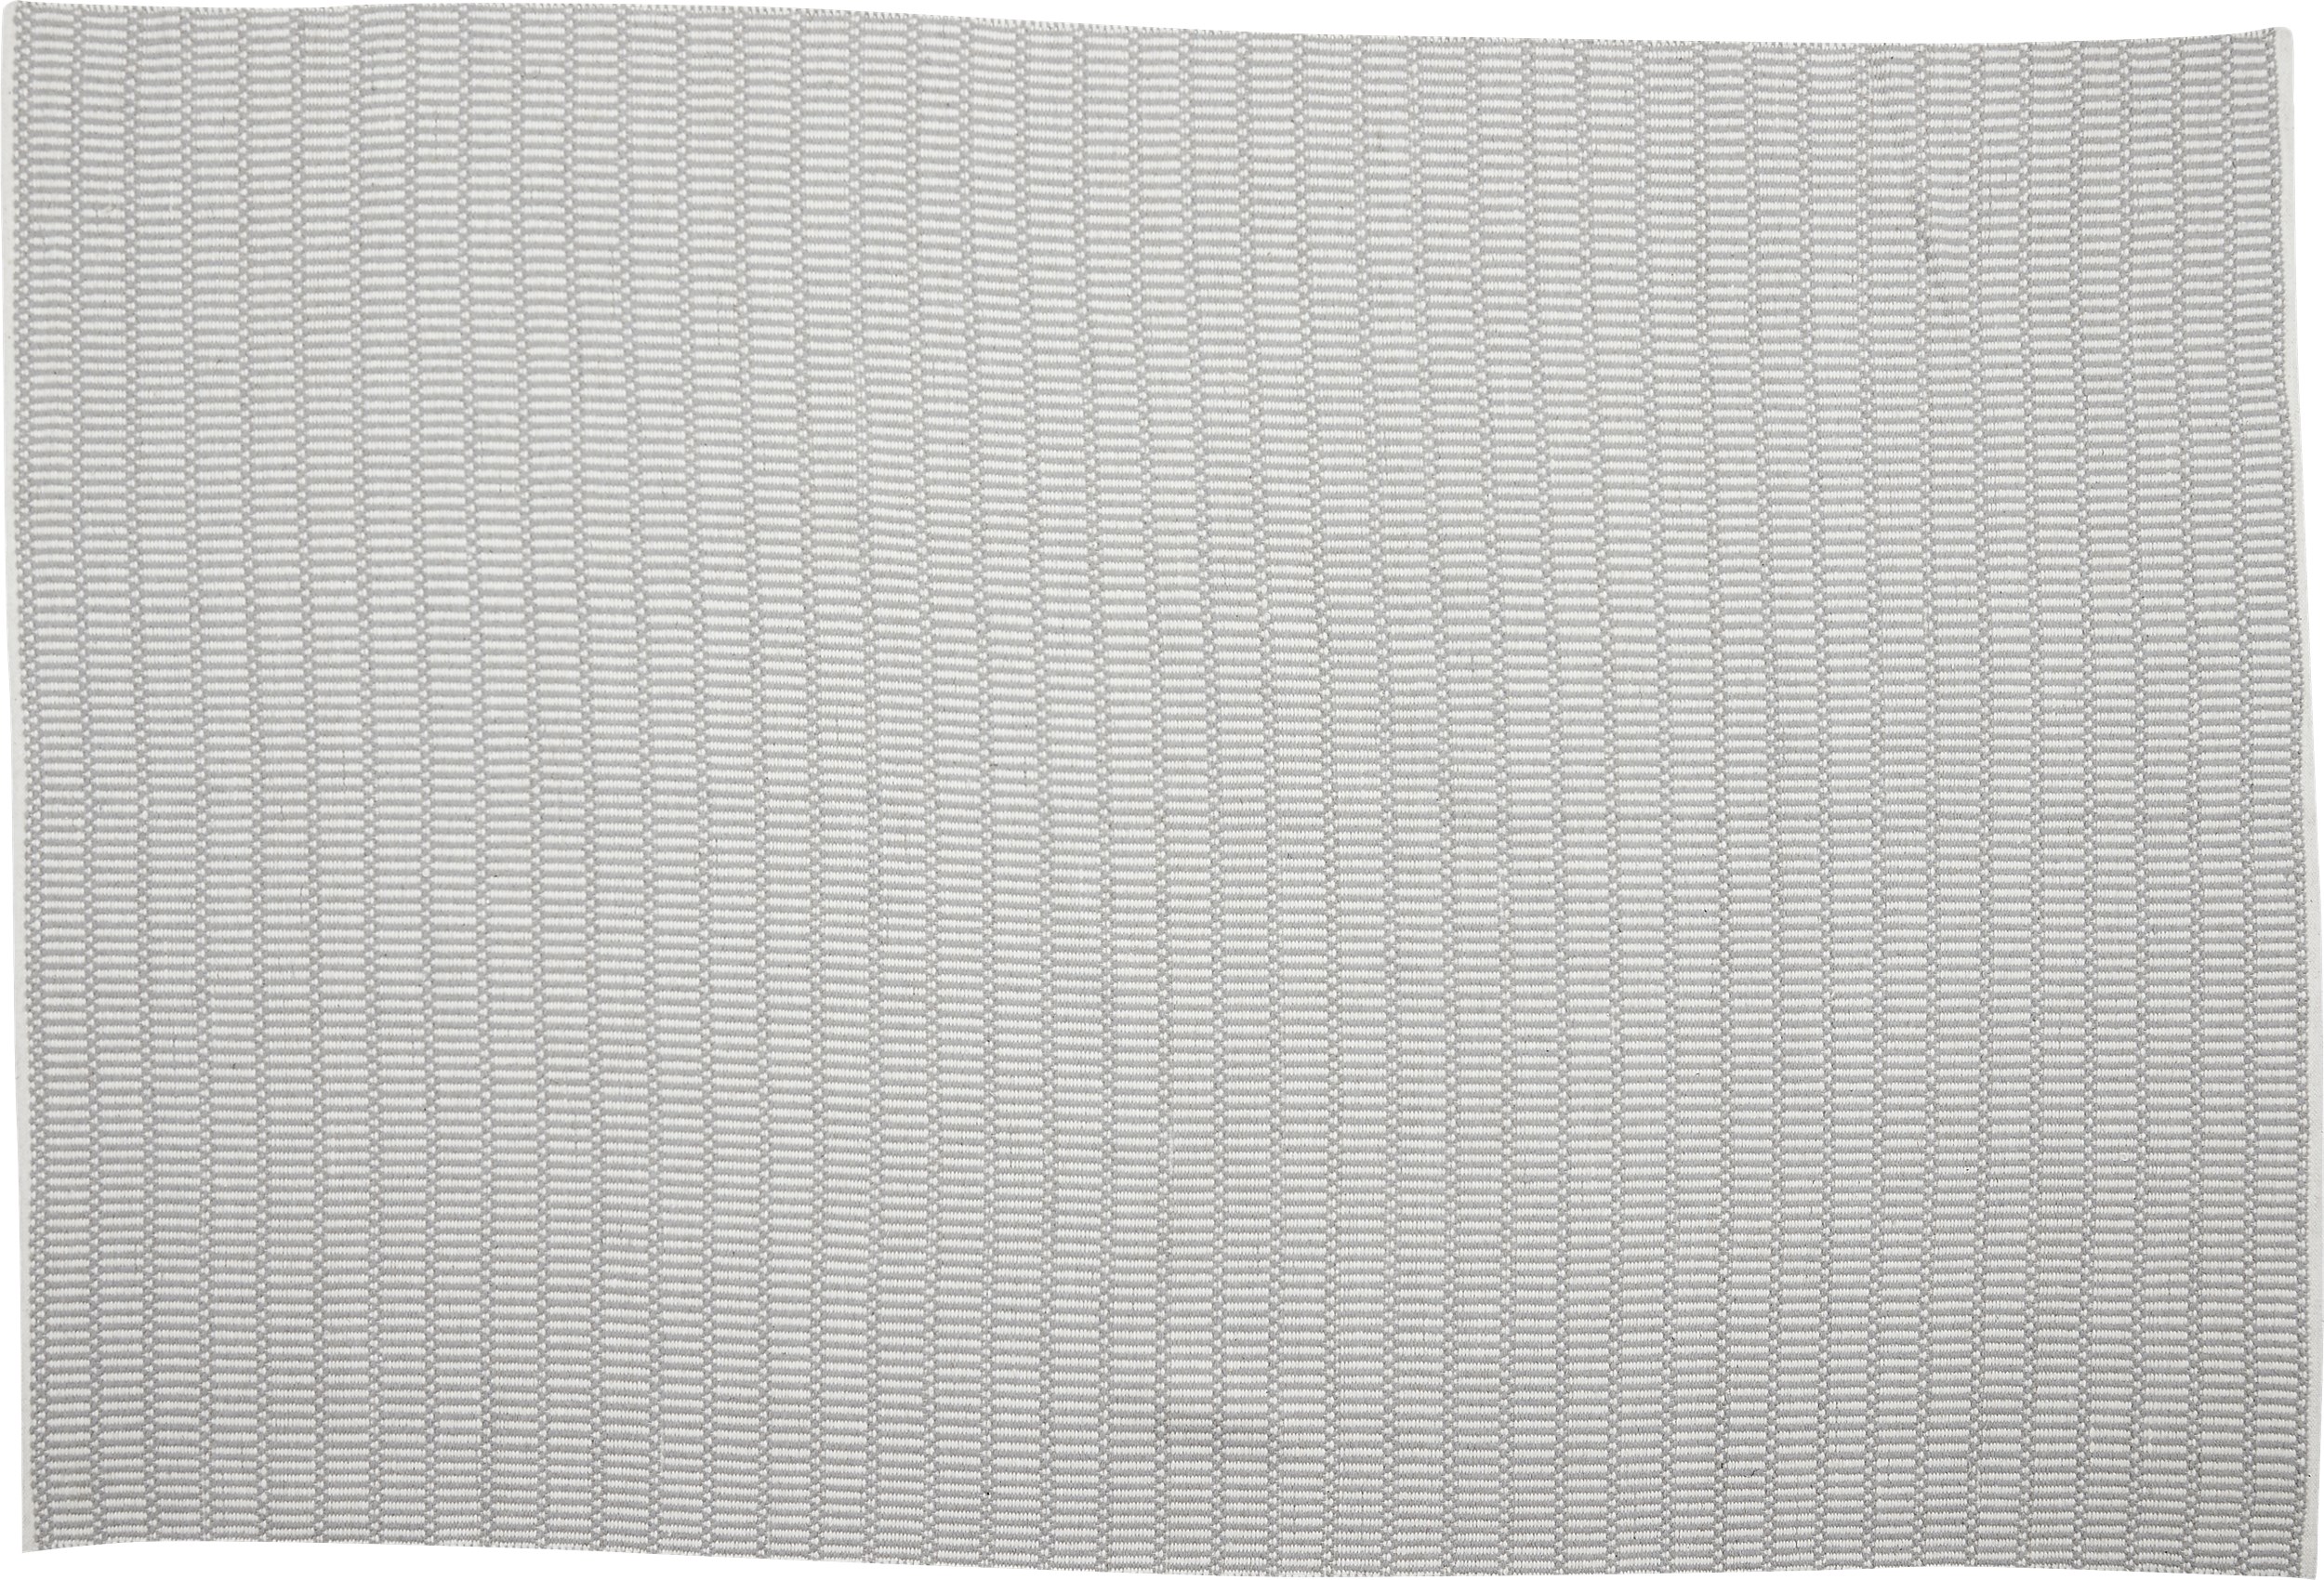 Rold Kelimmatta 200 x 300 cm - Offwhite/grå och randigt mönster